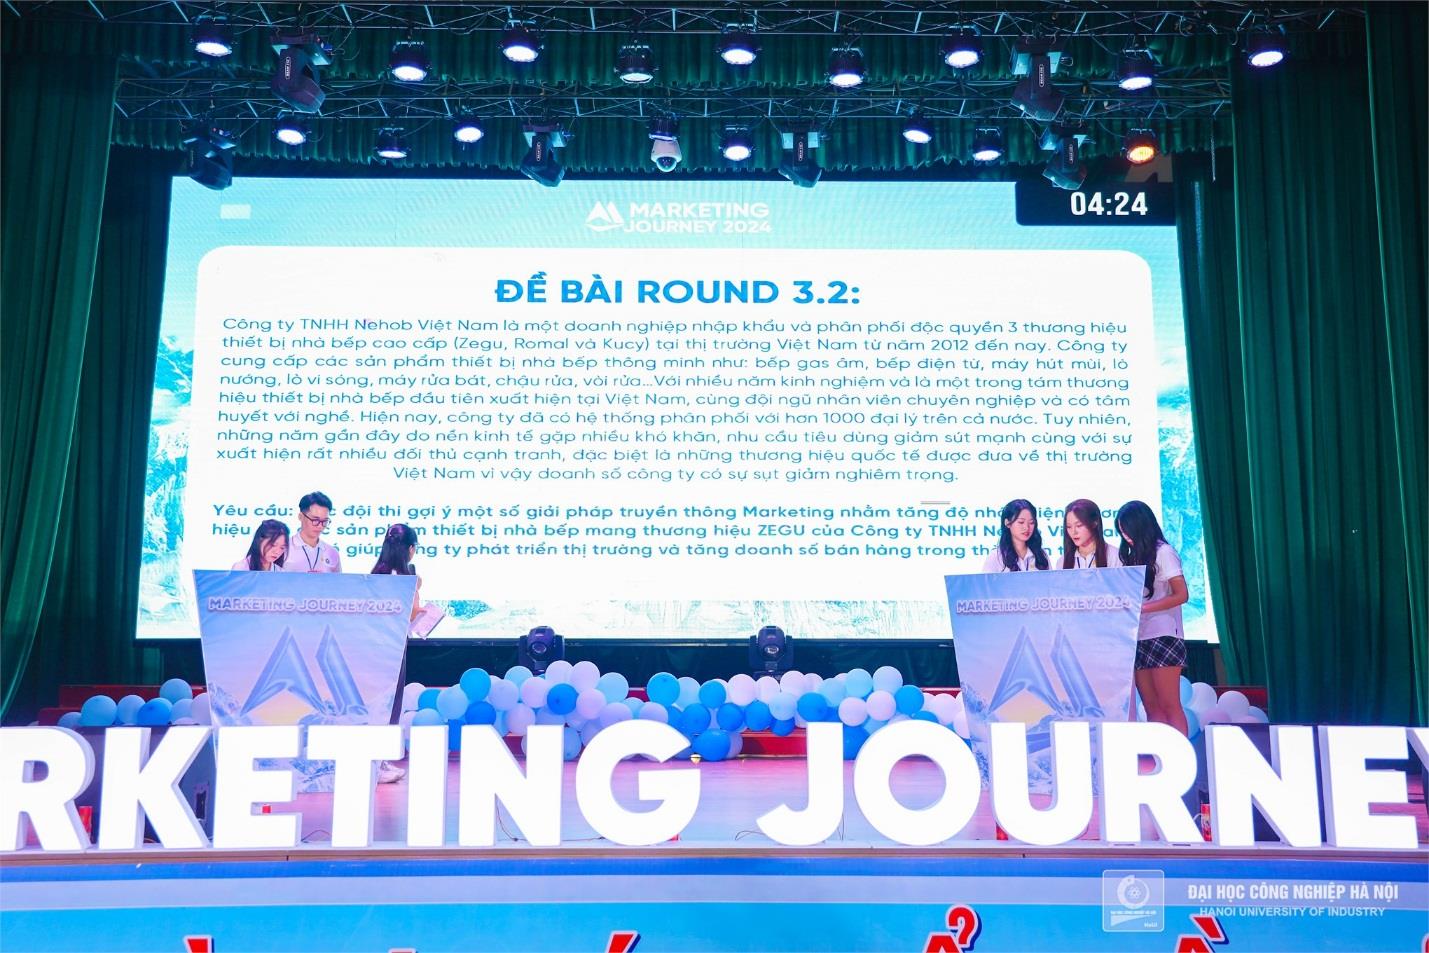 [doanhnghieptiepthi] Đại học Công nghiệp Hà Nội: Tổ chức thành công đêm chung kết Marketing Journey 2024